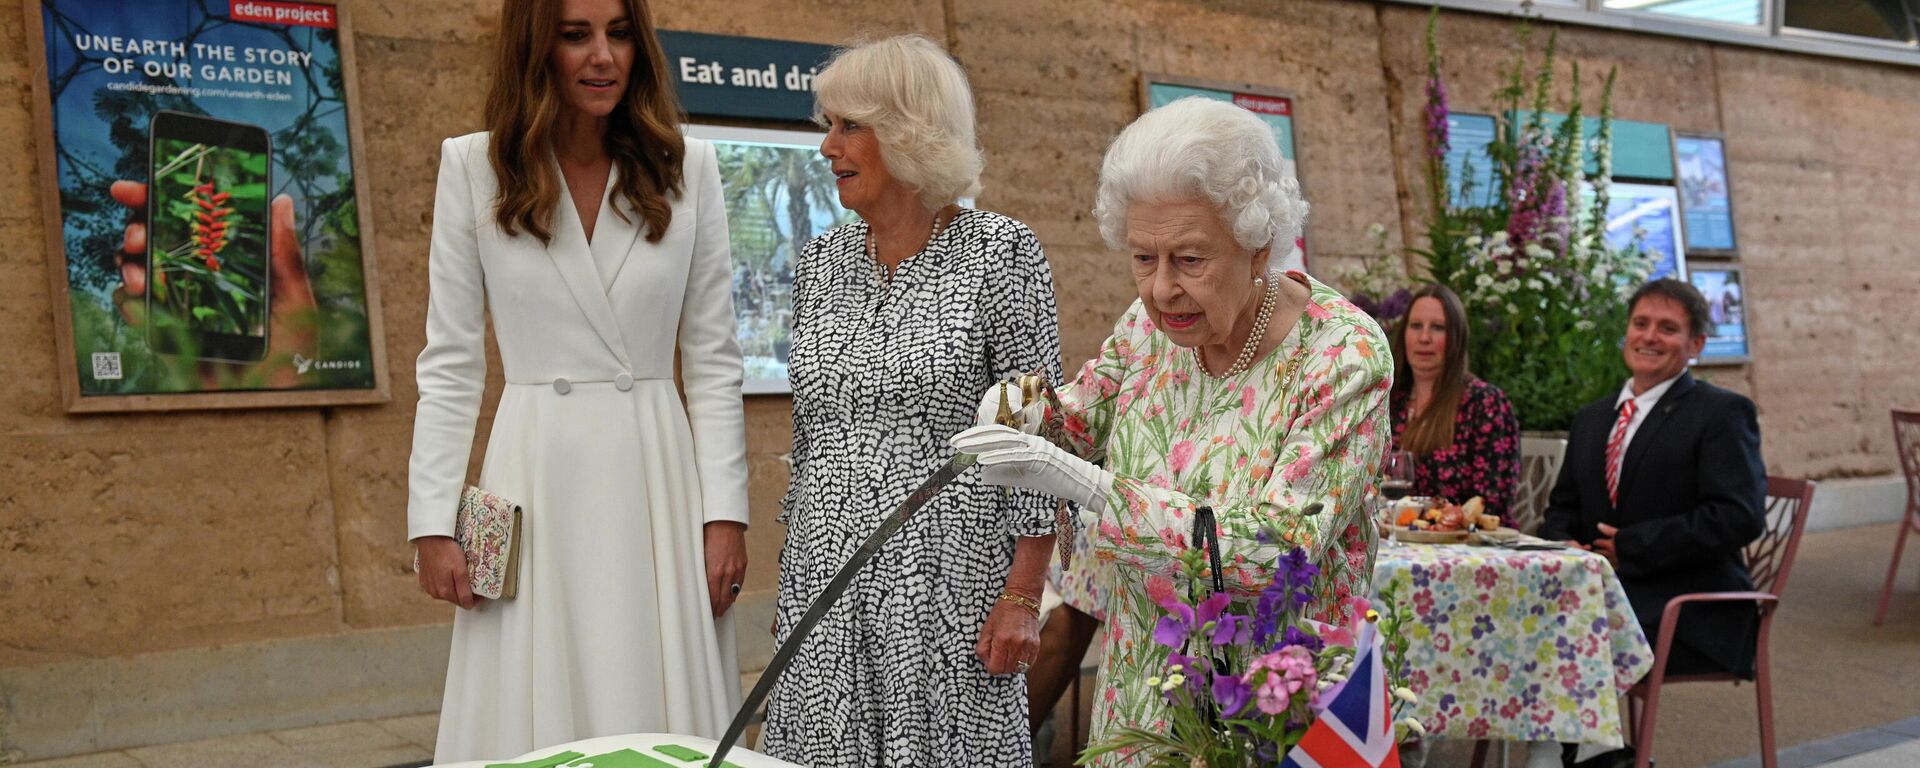 La reina Isabel II decide cortar un pastel con una espada en una ceremonia en Cornualles - Sputnik Mundo, 1920, 12.06.2021